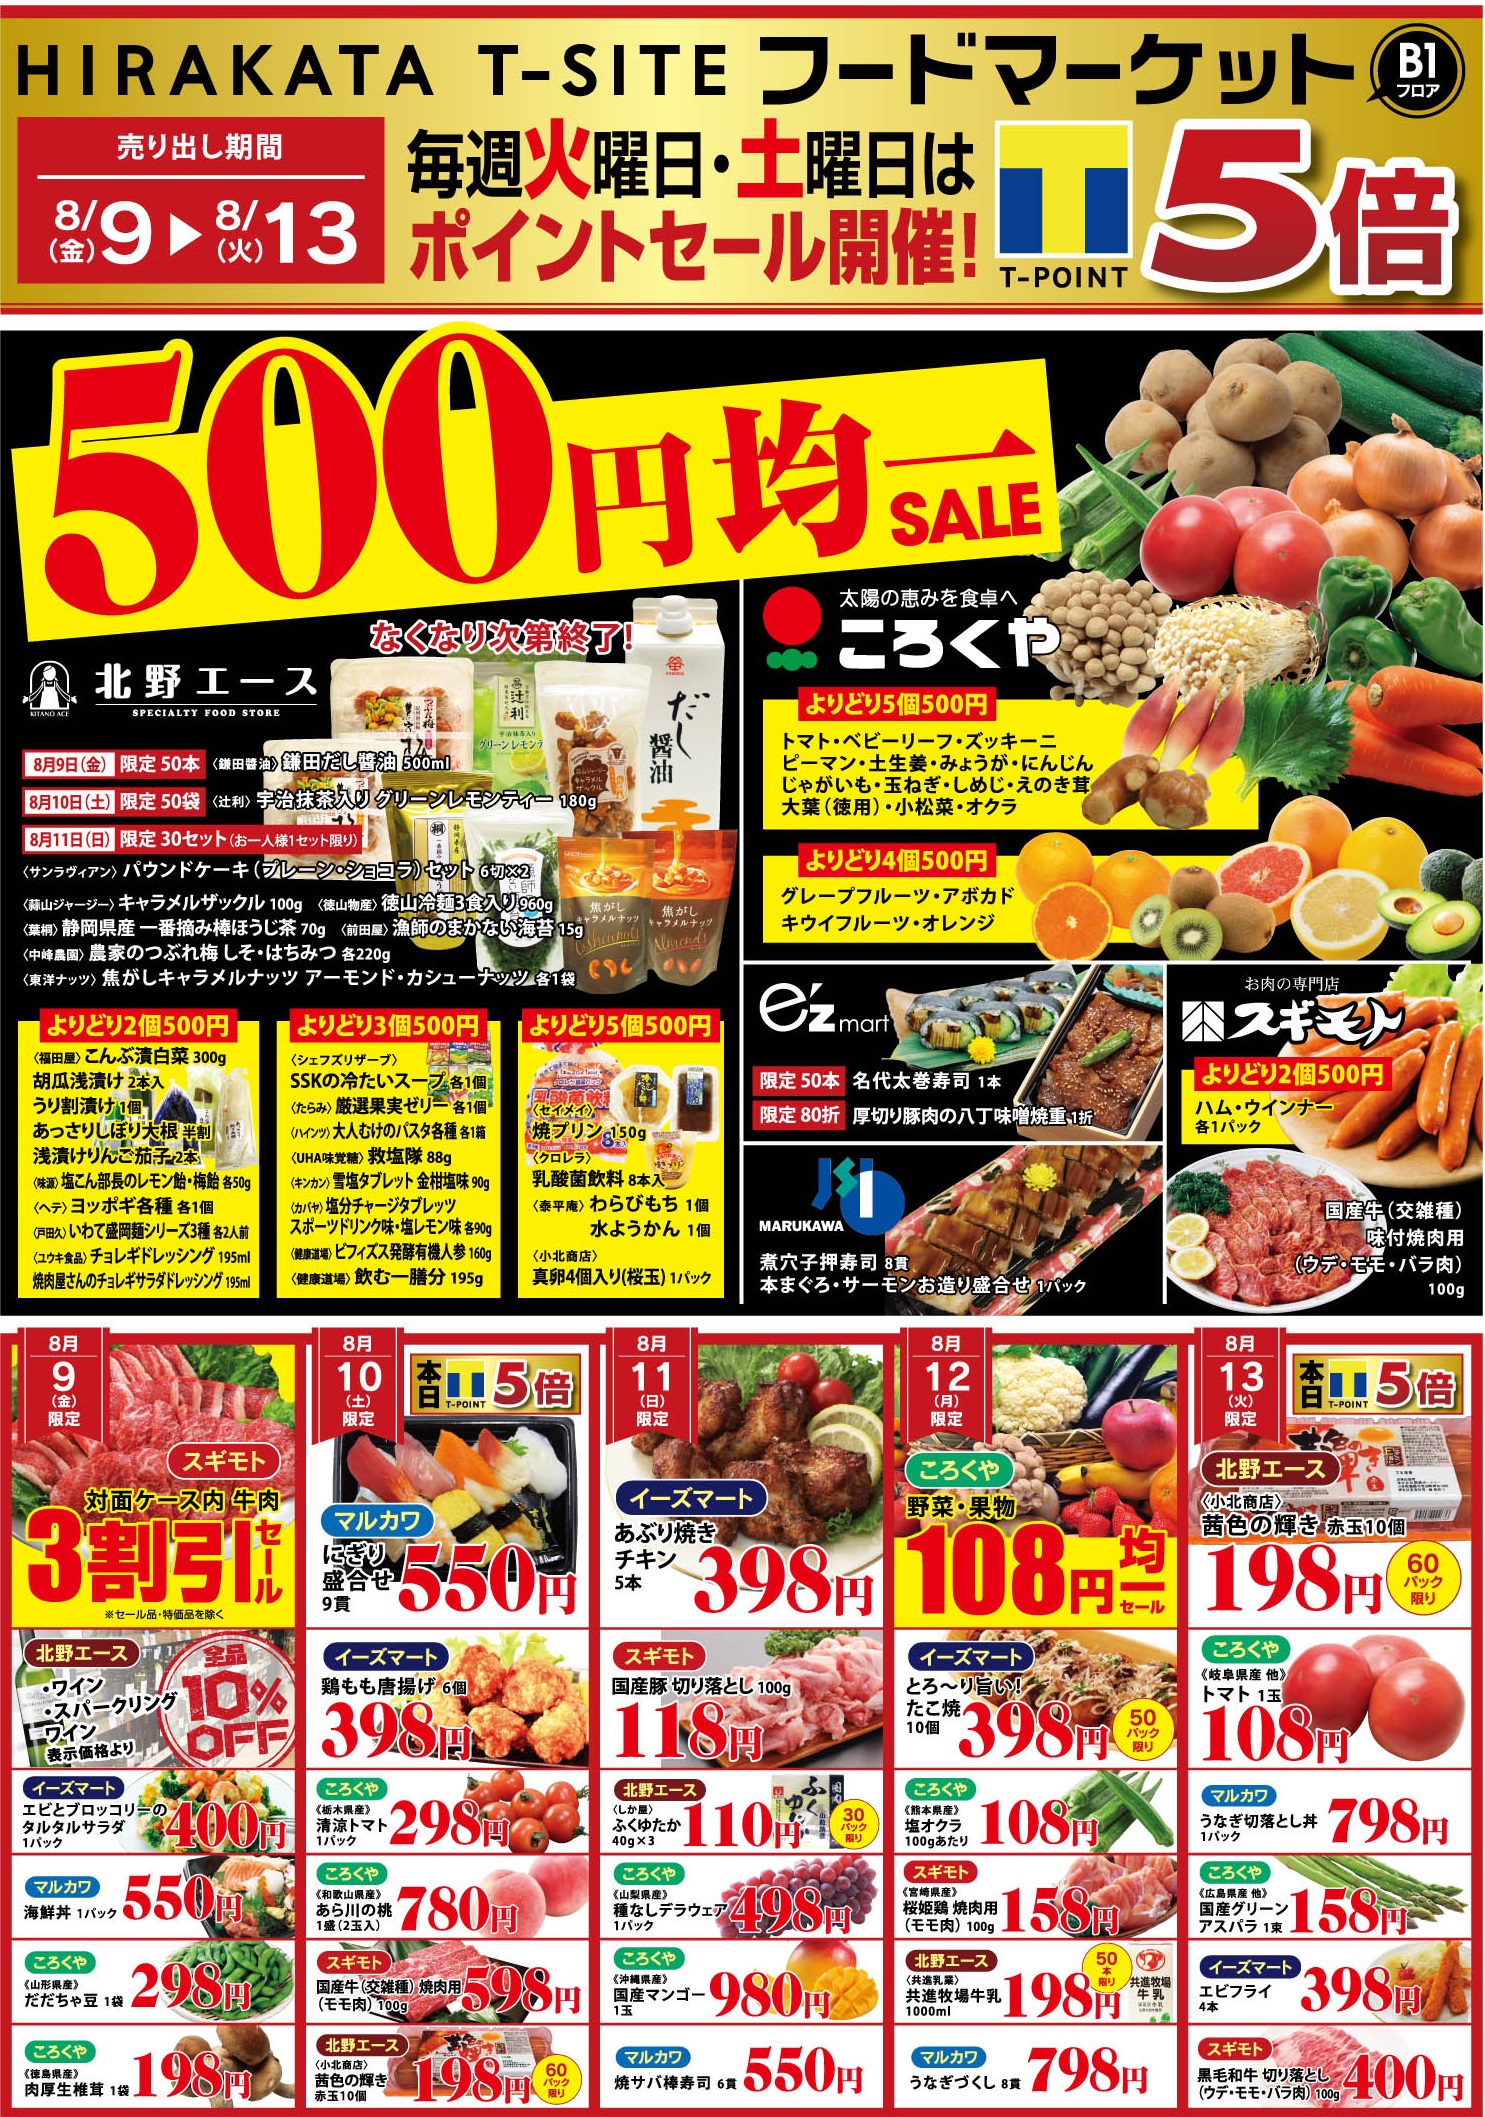 【SHOP NEWS】B1F フードマーケット 500円均一セール！【8/9(金)～8/13(火)】 | インフォメーション | 枚方 T